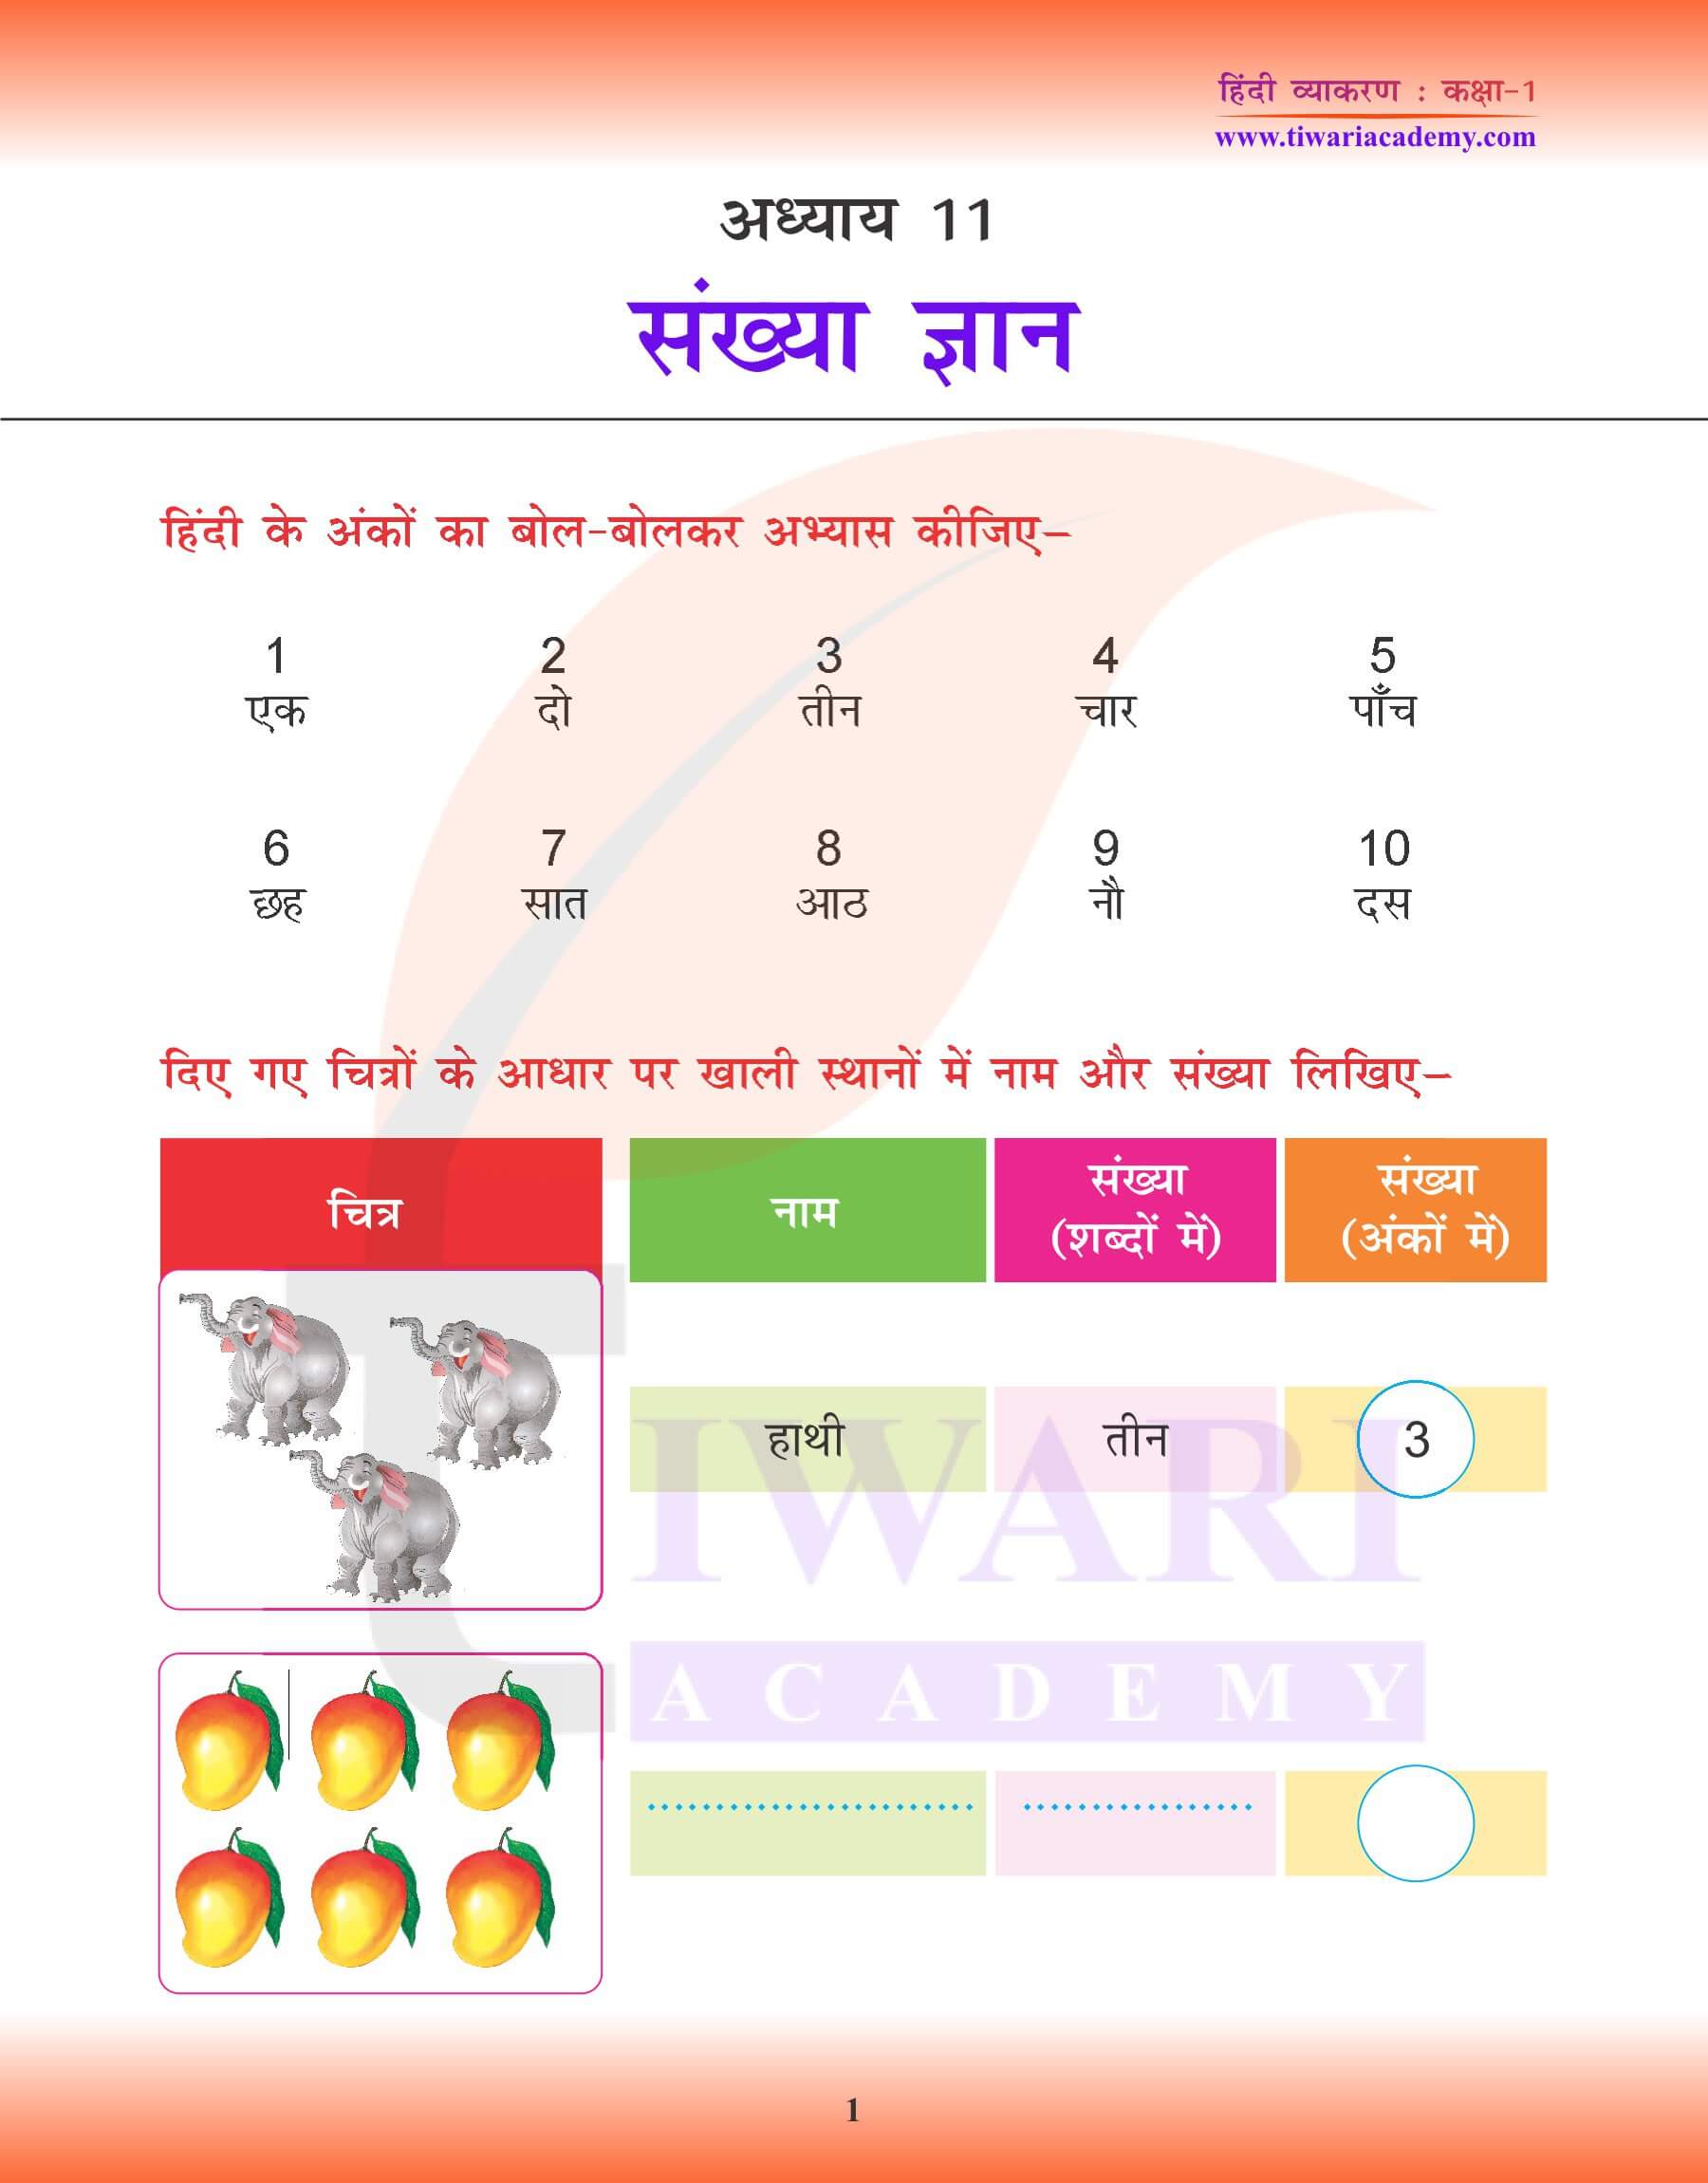 कक्षा 1 हिंदी व्याकरण में संख्या ज्ञान